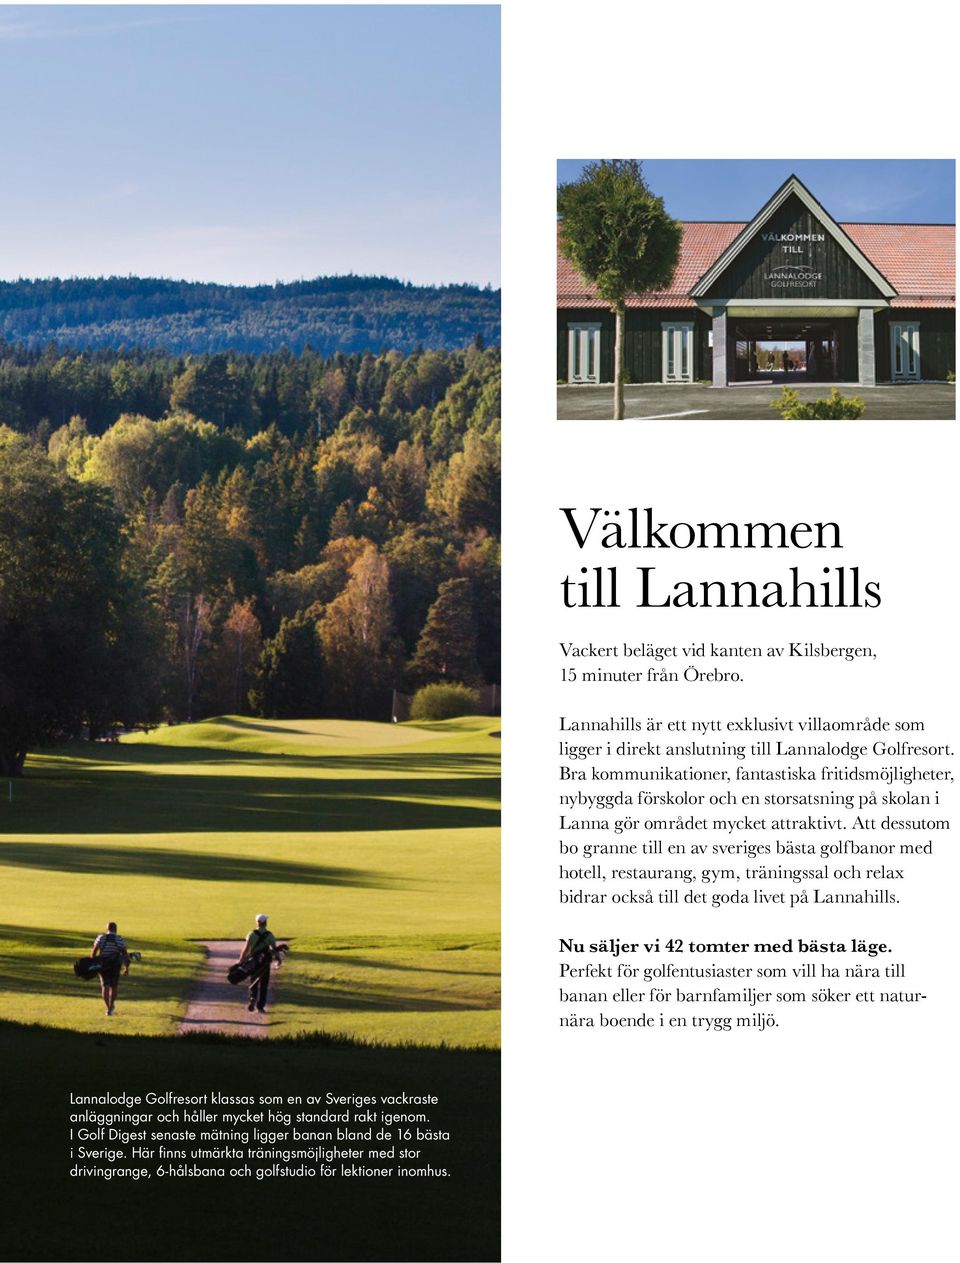 Att dessutom bo granne till en av sveriges bästa golfbanor med hotell, restaurang, gym, träningssal och relax bidrar också till det goda livet på Lannahills. Nu säljer vi 42 tomter med bästa läge.